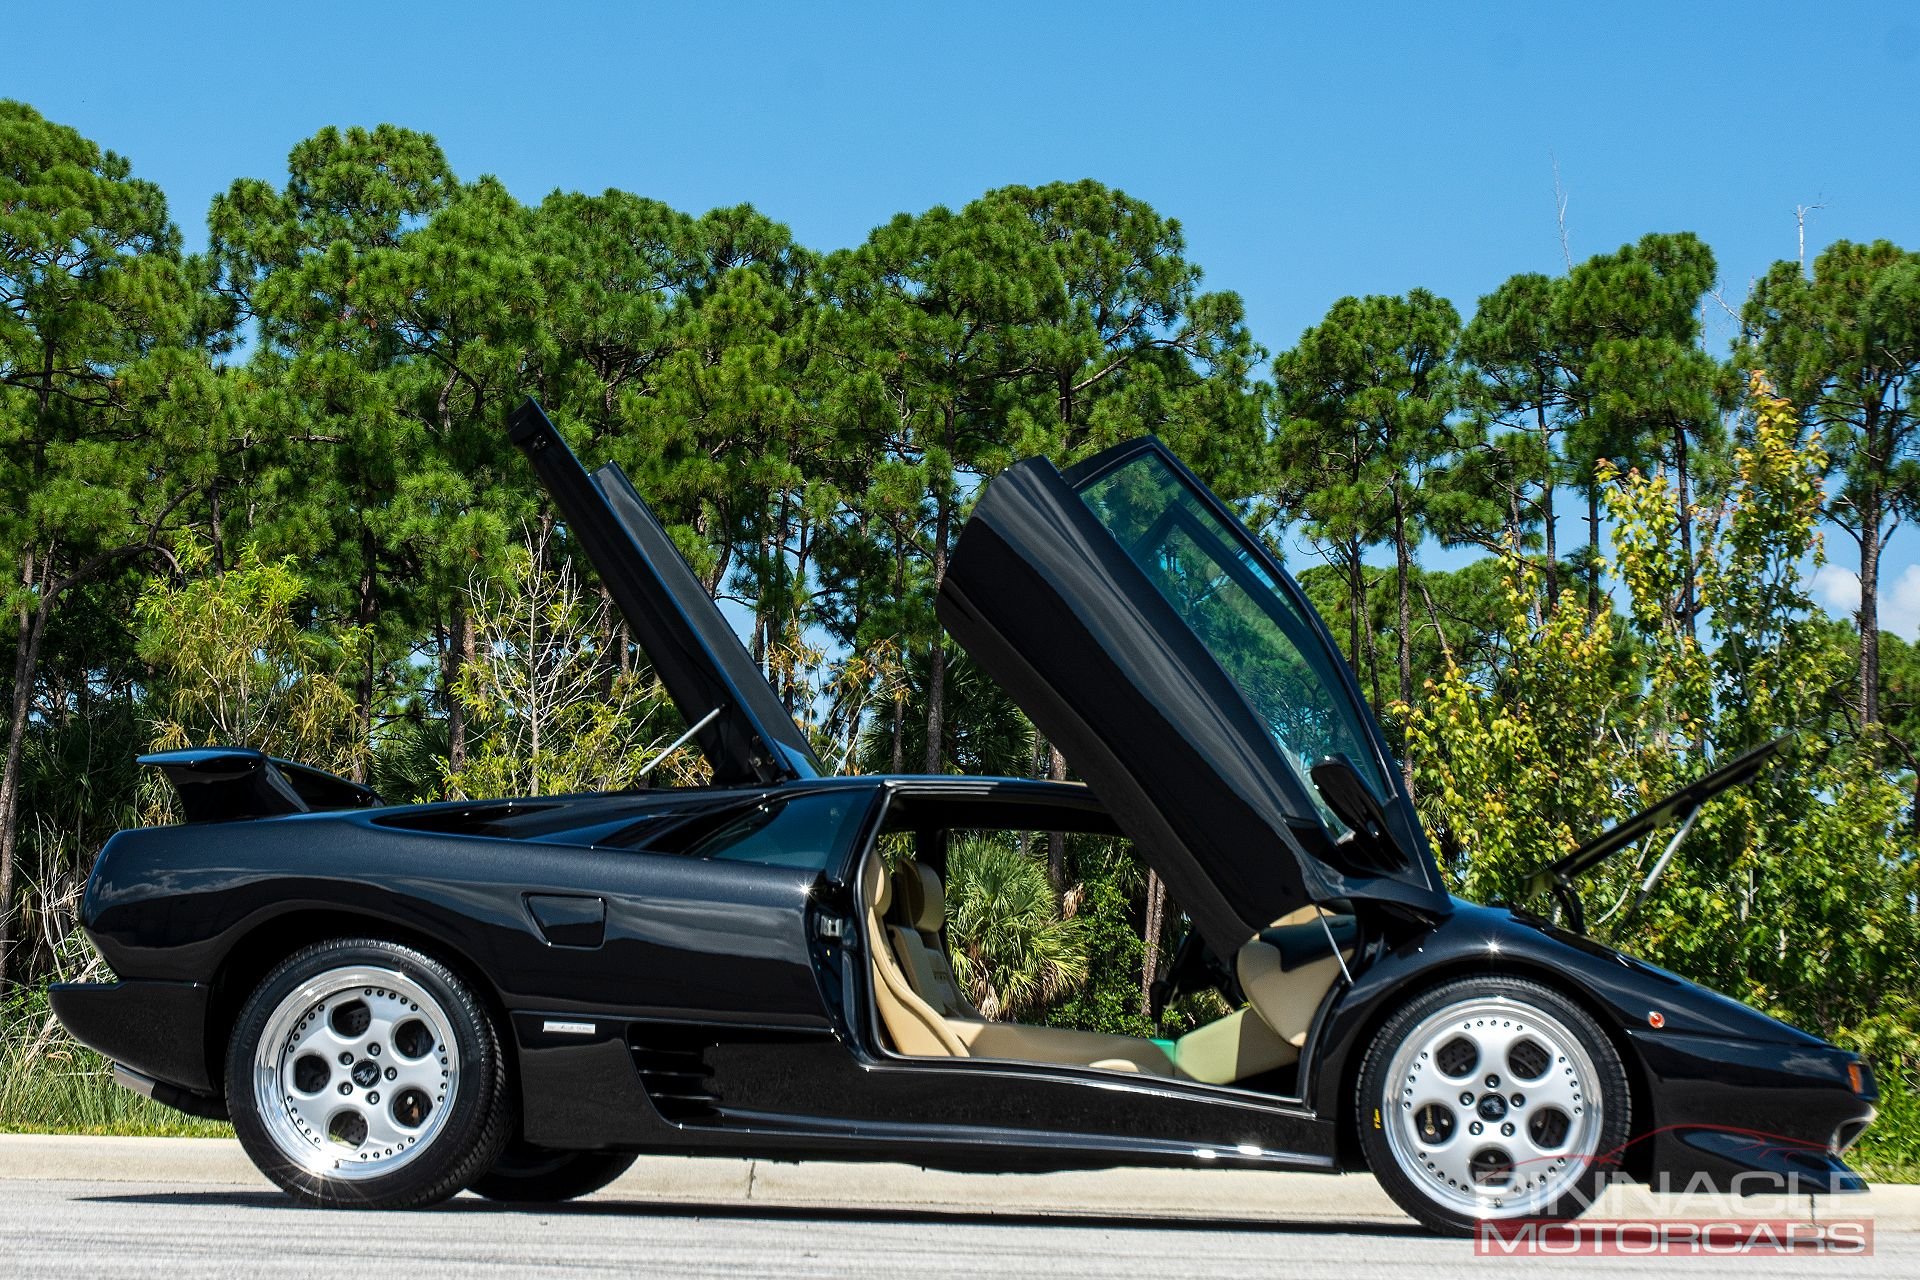 30134104 | 1999 Lamborghini Diablo VT | Pinnacle Motorcars